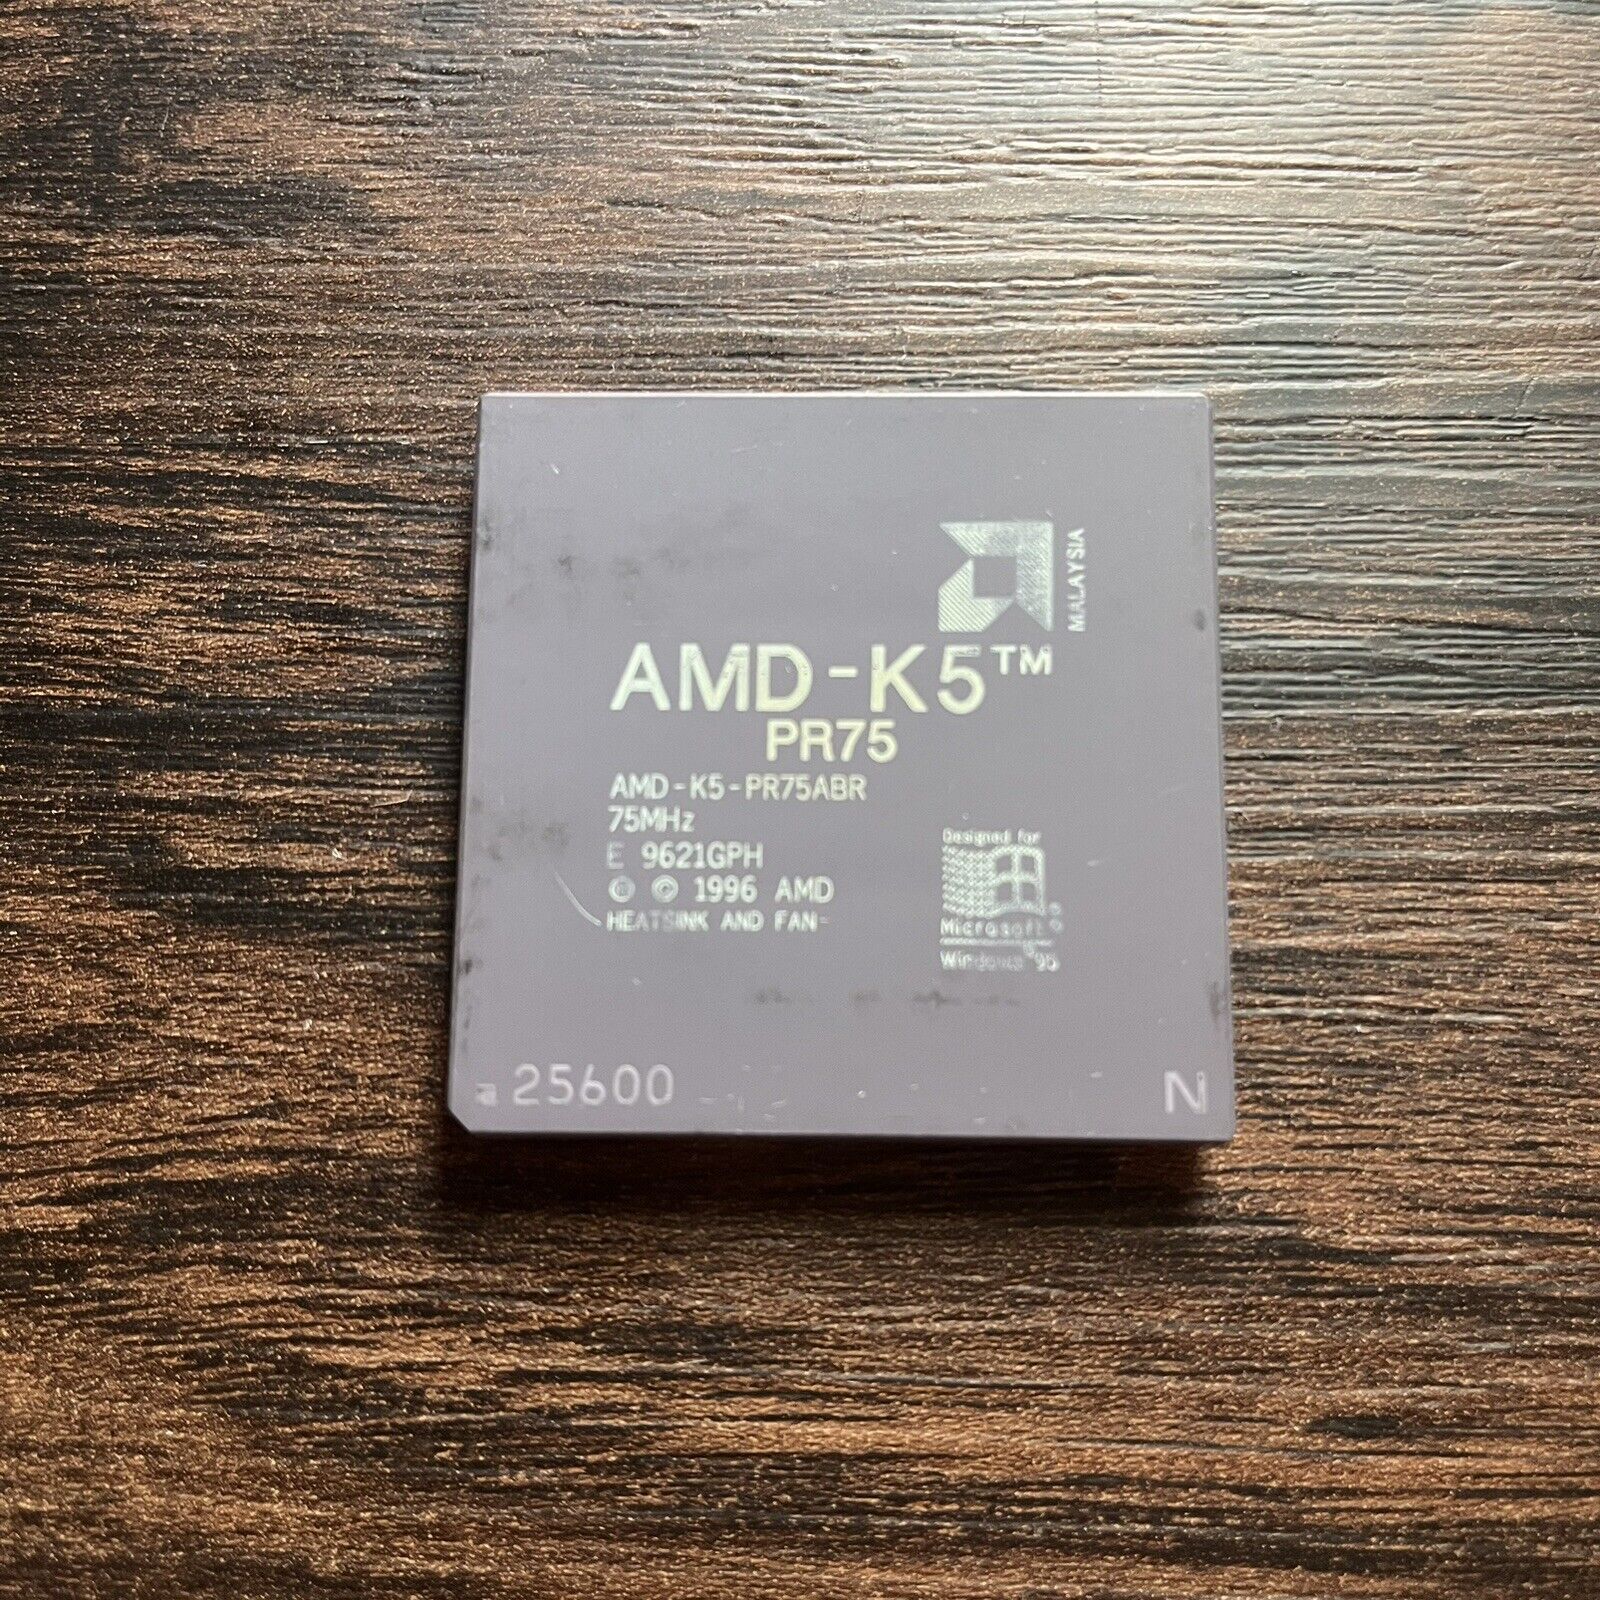 AMD K5 PR75 Socket 7 CPU 75MHz Ceramic PR75ABR